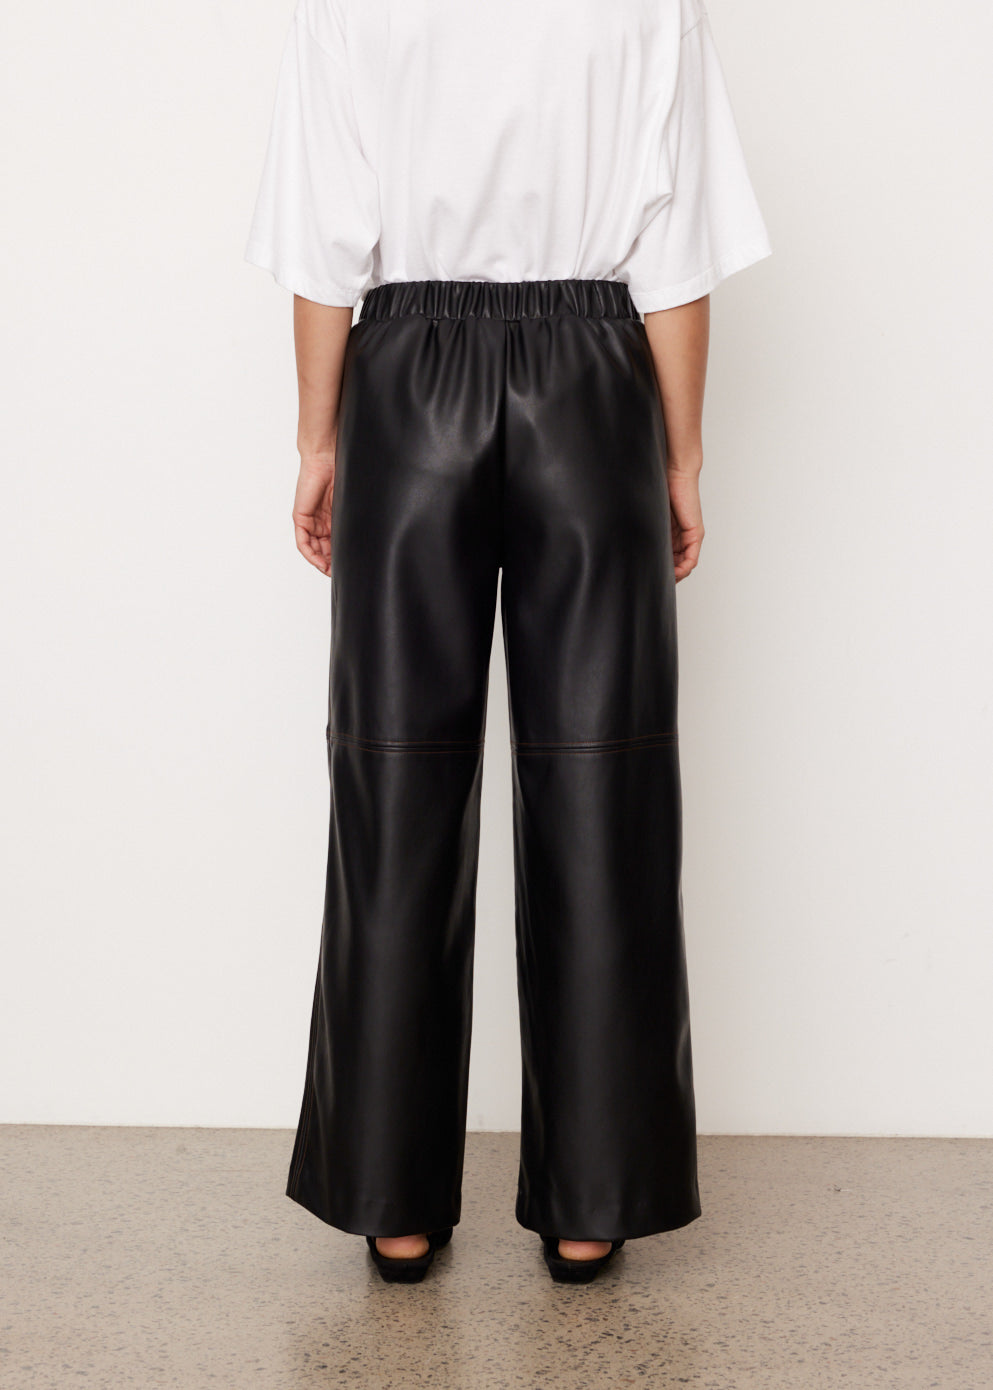 Claudia Vegan Leather Pants